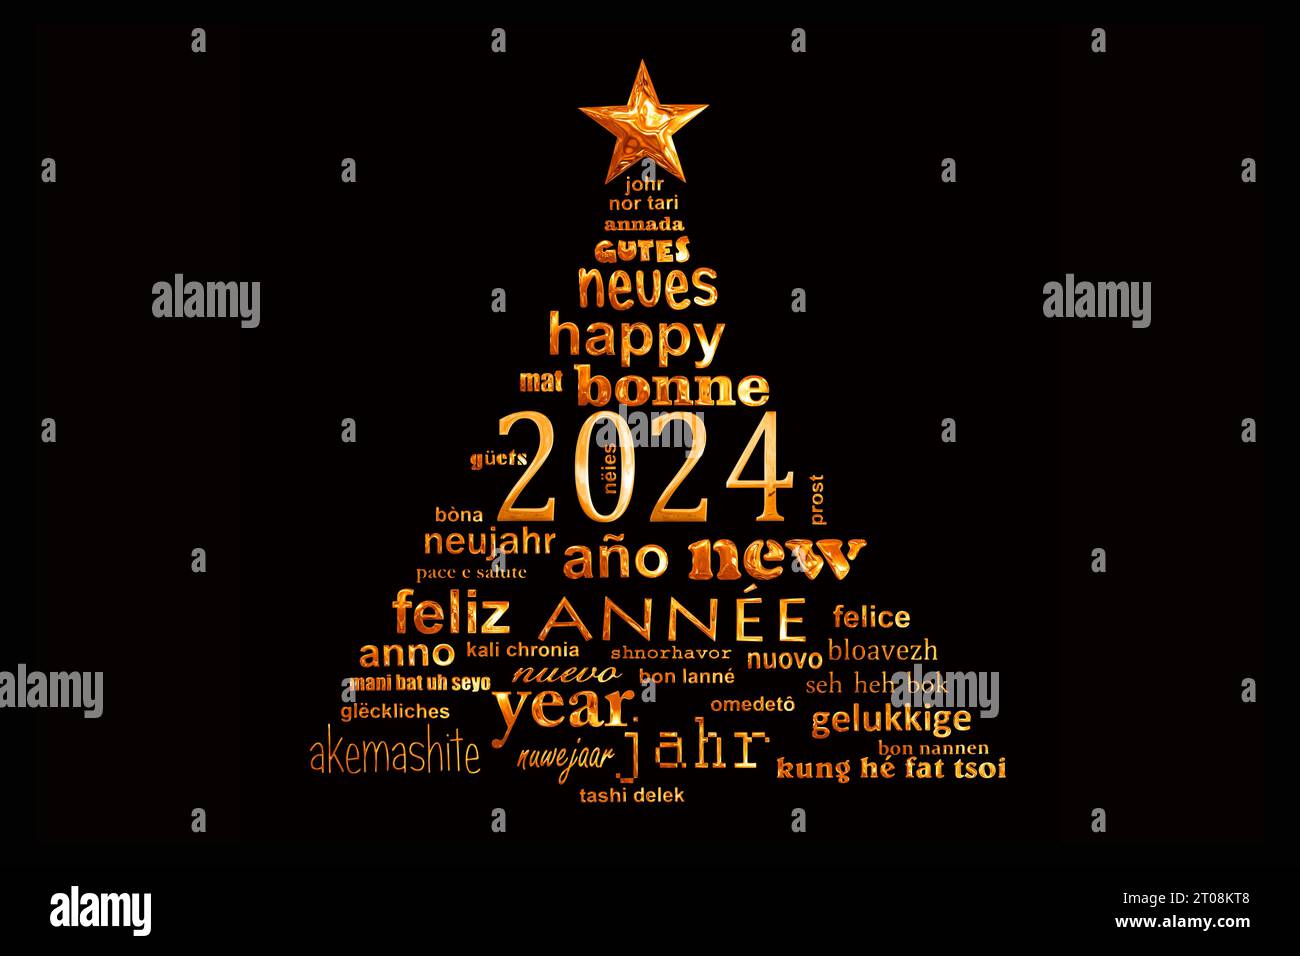 Mehrsprachige Grußkarte zum Neujahr 2024 in Form eines weihnachtsbaums Stockfoto